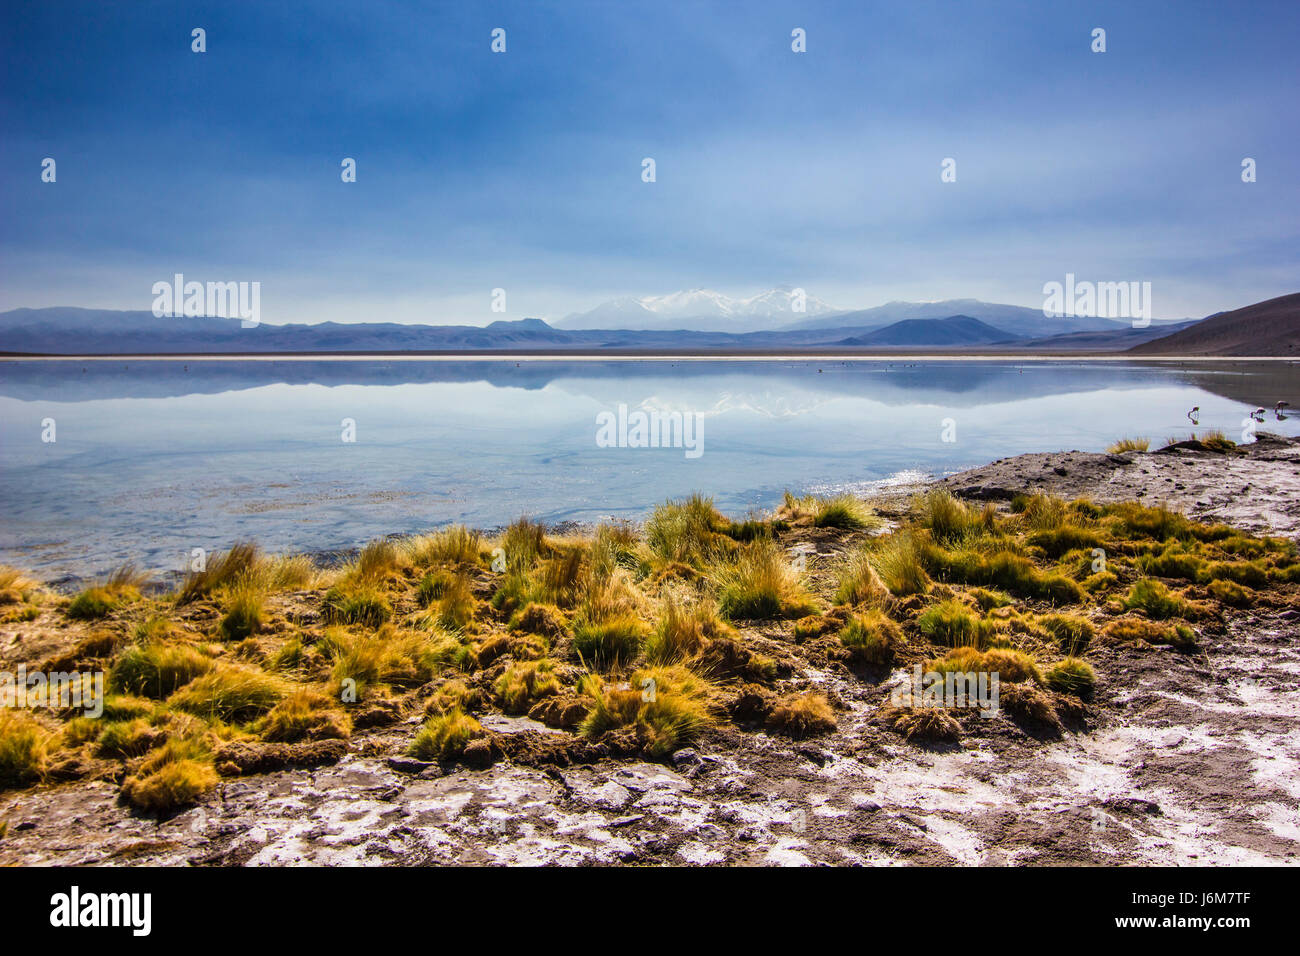 La superficie del espejo del lago de montaña, rodeado de altas cumbres y hierba amarilla Foto de stock